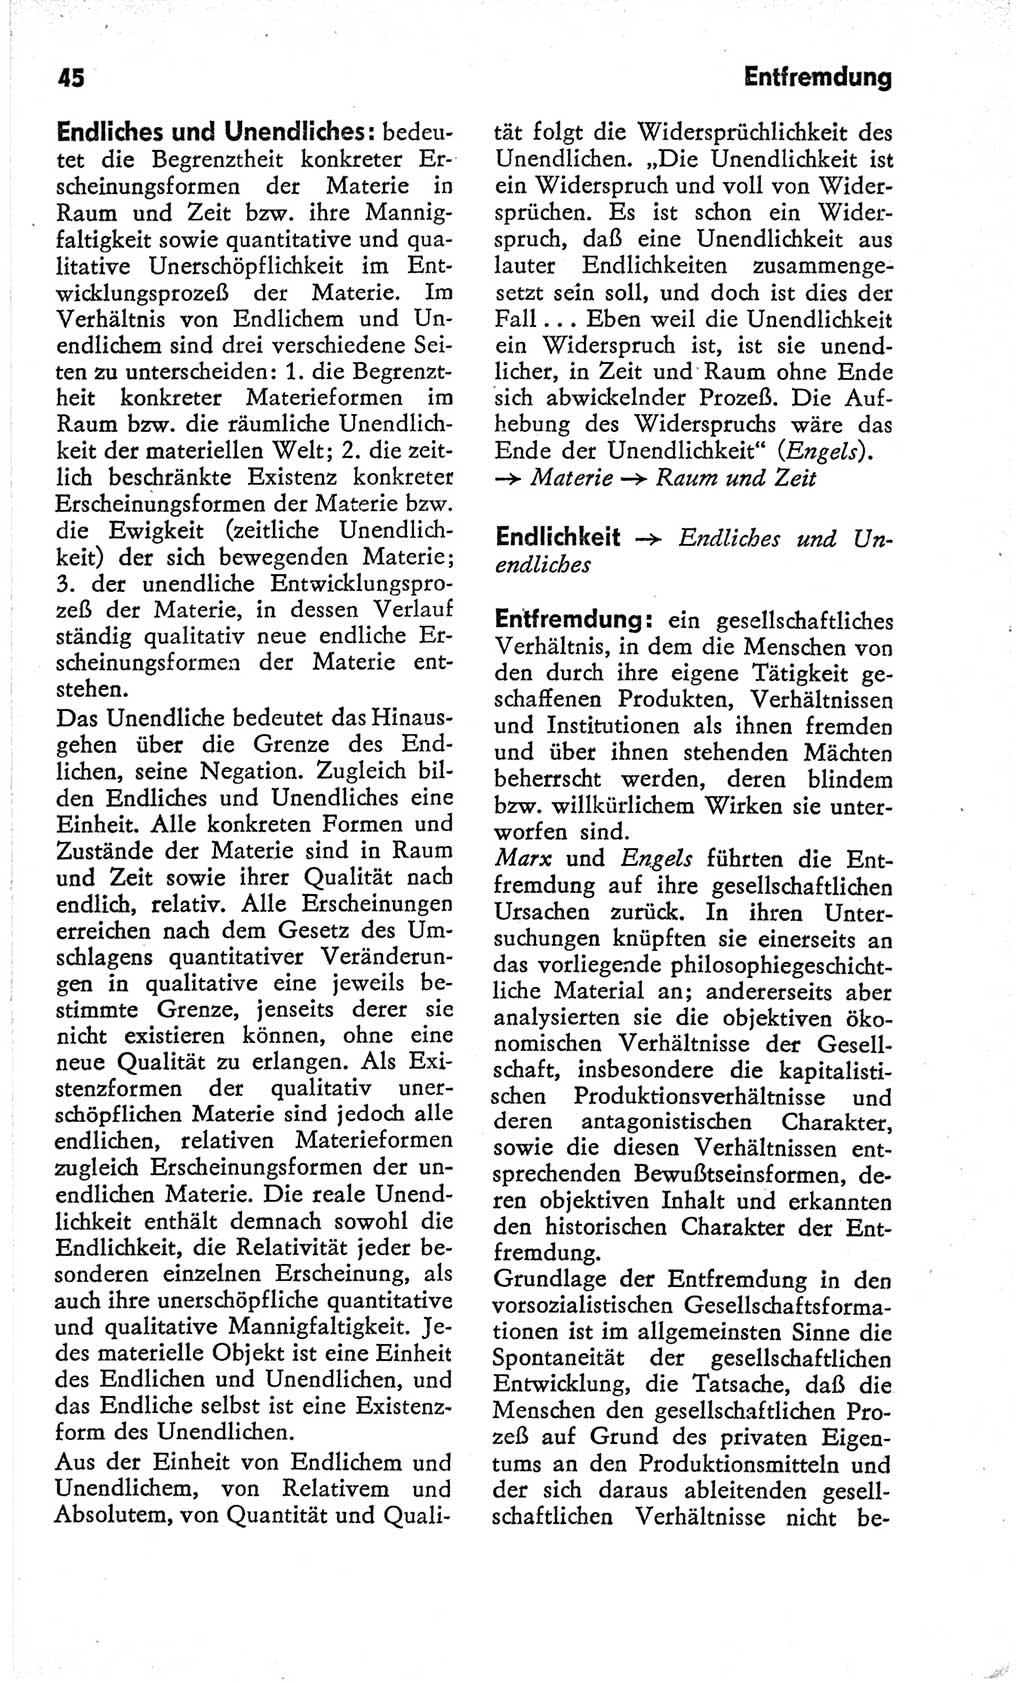 Kleines Wörterbuch der marxistisch-leninistischen Philosophie [Deutsche Demokratische Republik (DDR)] 1966, Seite 45 (Kl. Wb. ML Phil. DDR 1966, S. 45)